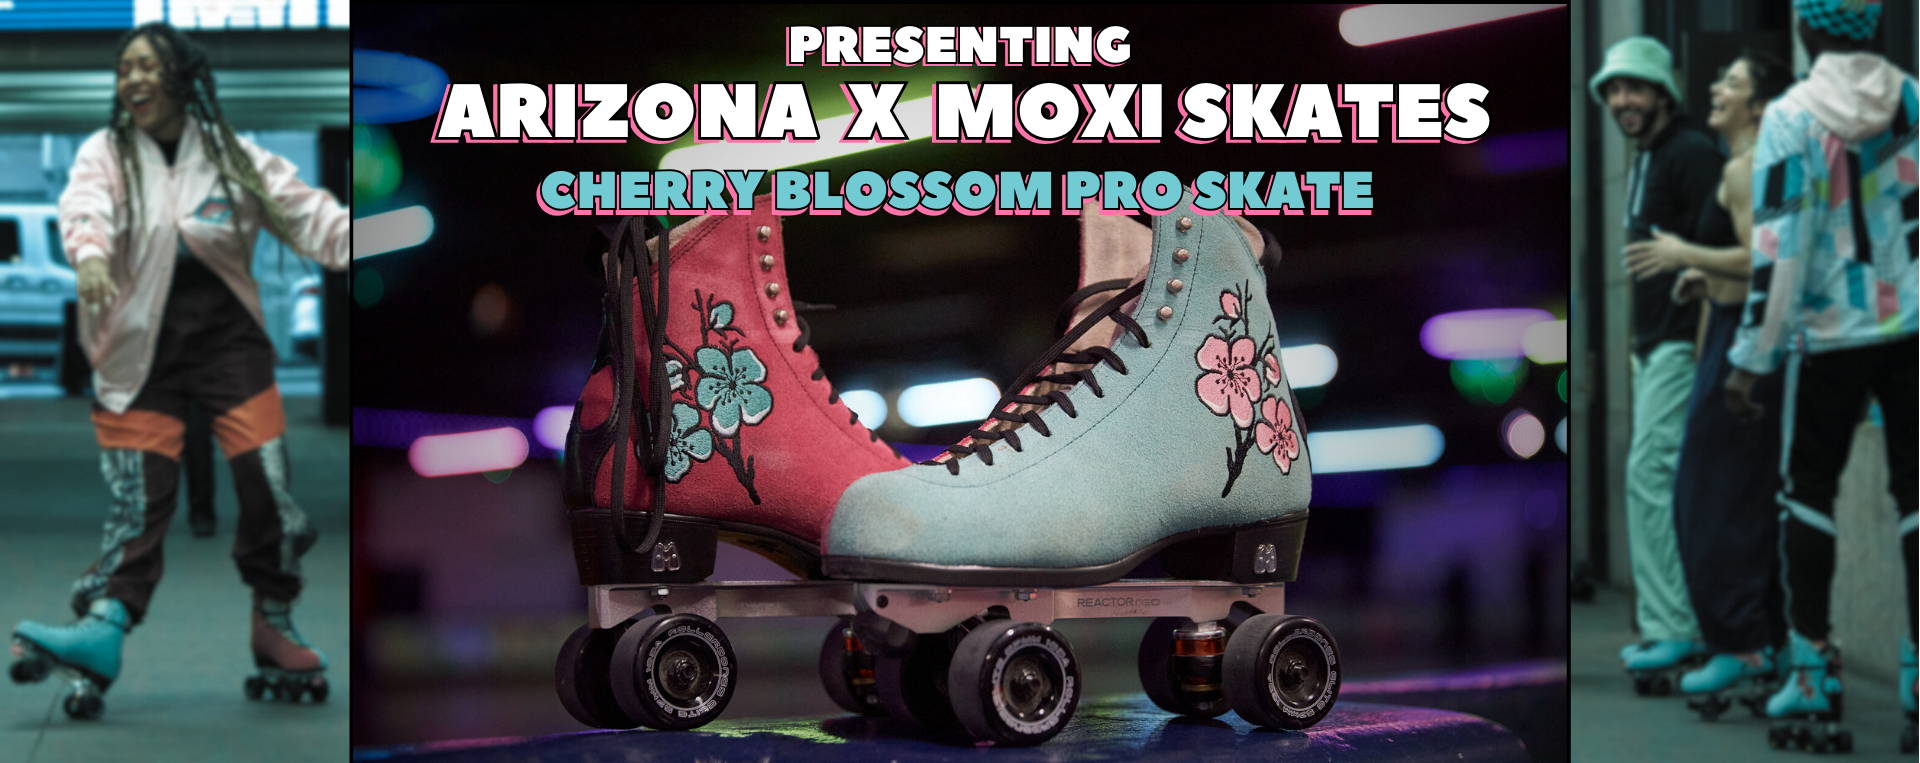 Presenting Arizona x Moxi Skates Cherry Blossom Pro Skate